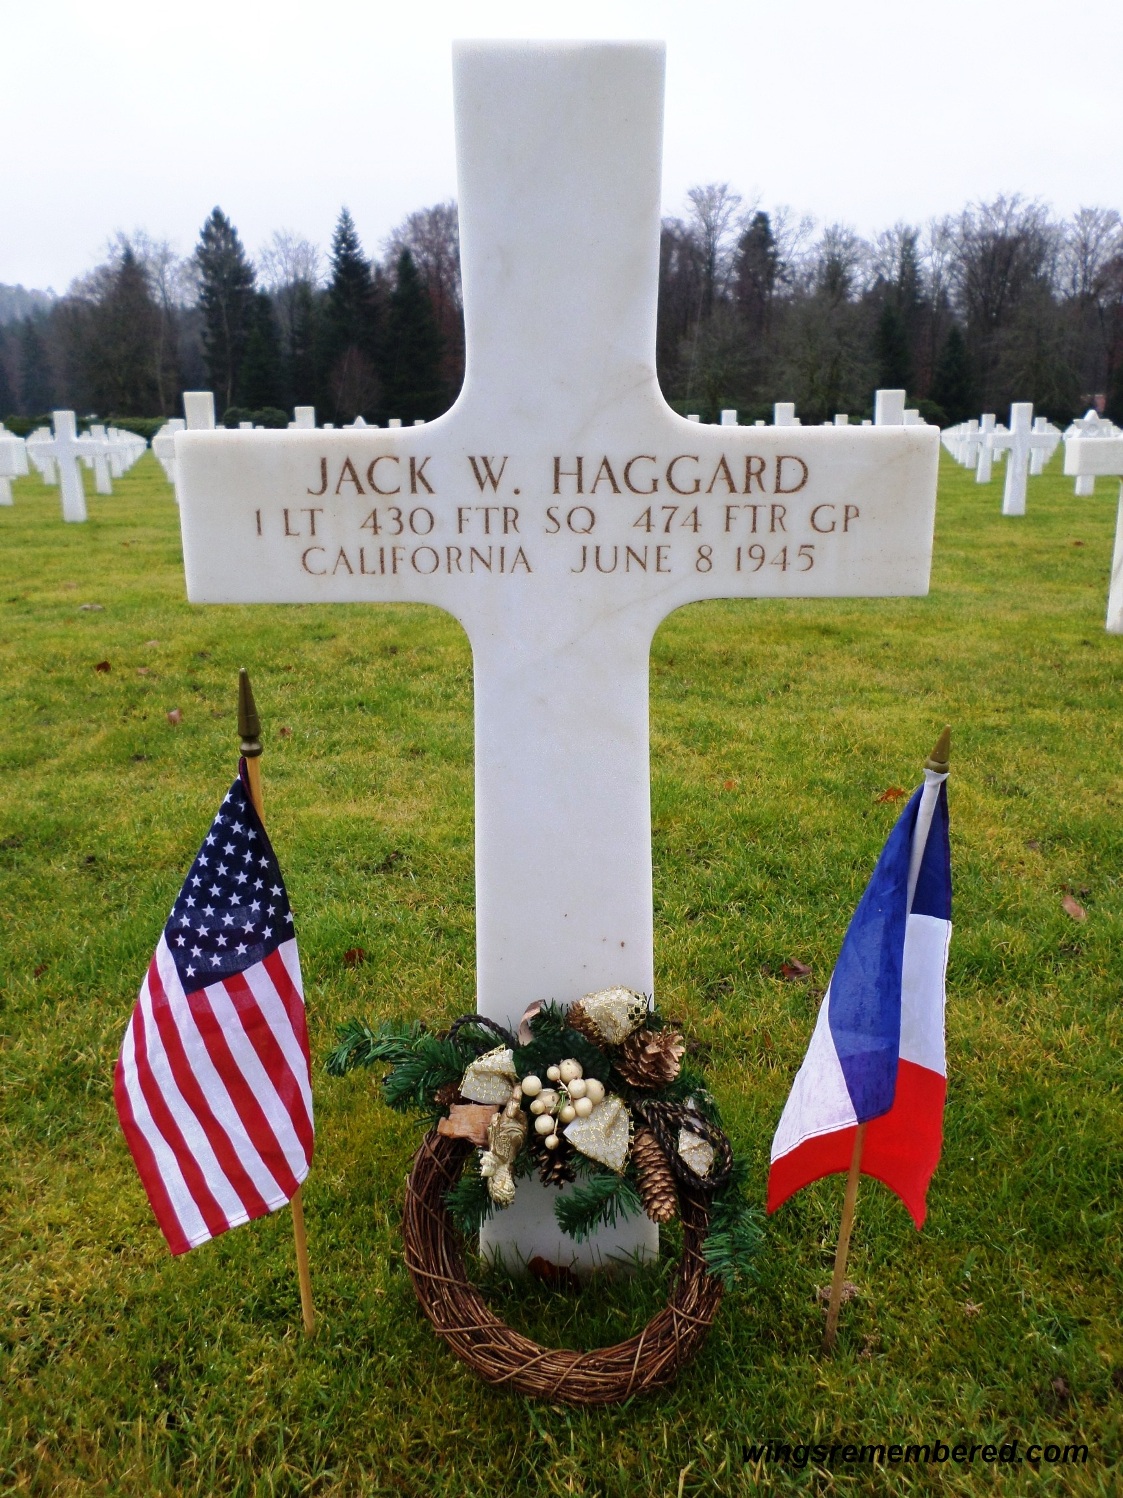 Lt Jack Haggard Grave